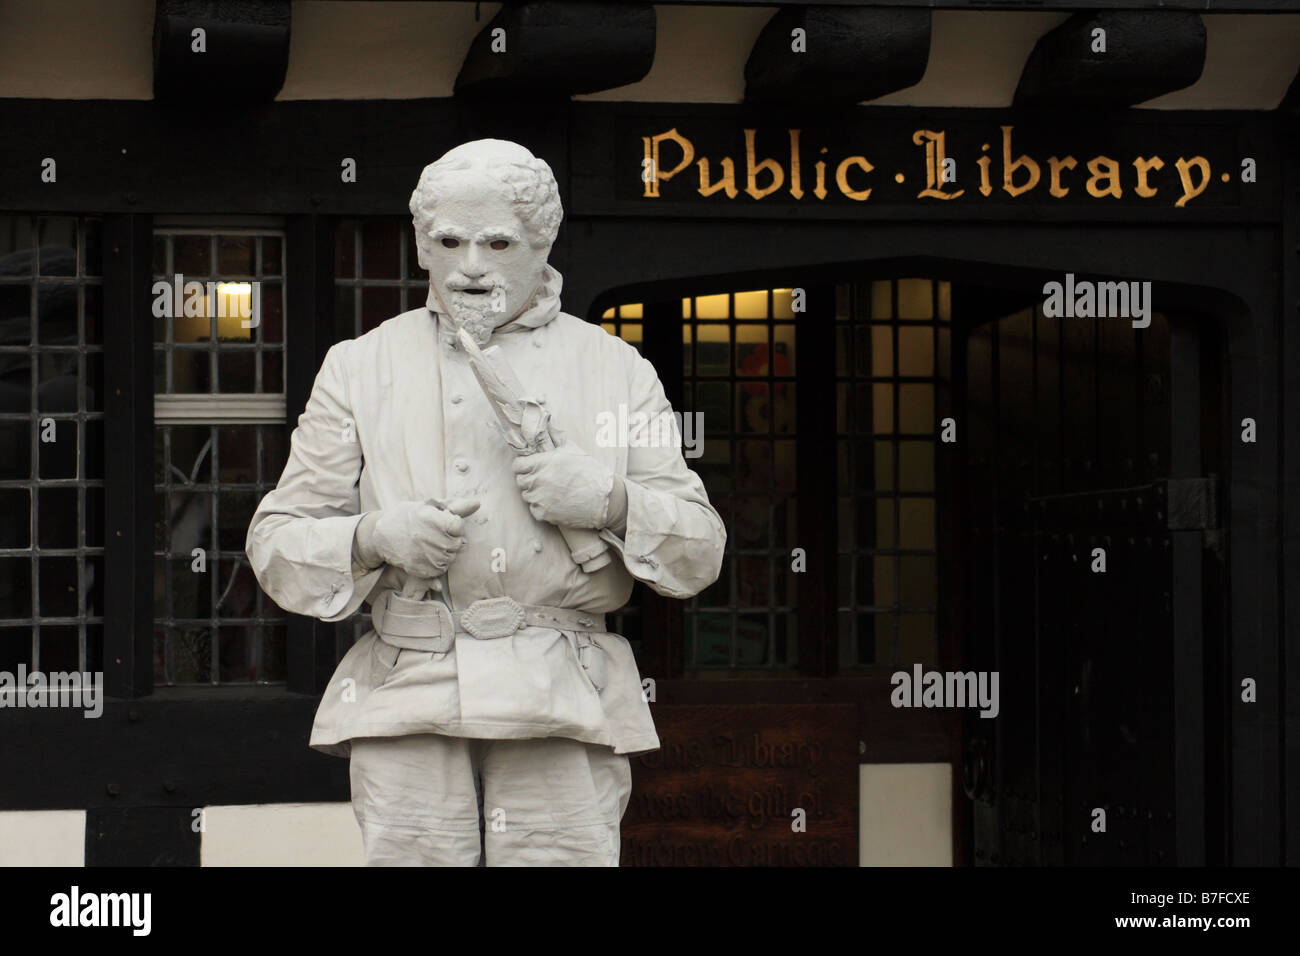 Un livign statue street artiste exécute comme William Shakespeare à l'extérieur de la Bibliothèque publique de Stratford-upon-Avon EnglandUK Banque D'Images